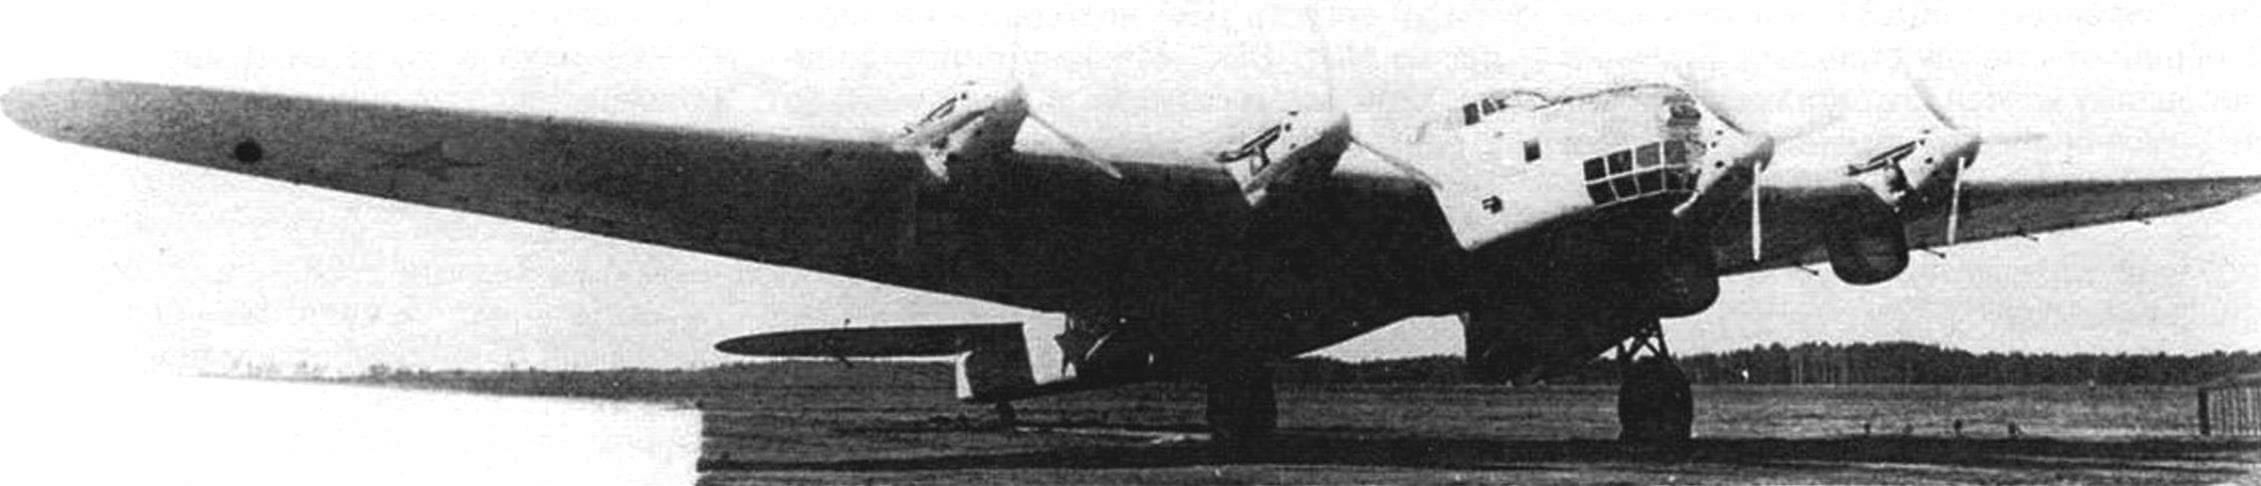 Самолет ДБА-37 после установки моторов М-34ФРН-ТК с турбонаддувом (август 1938 года)